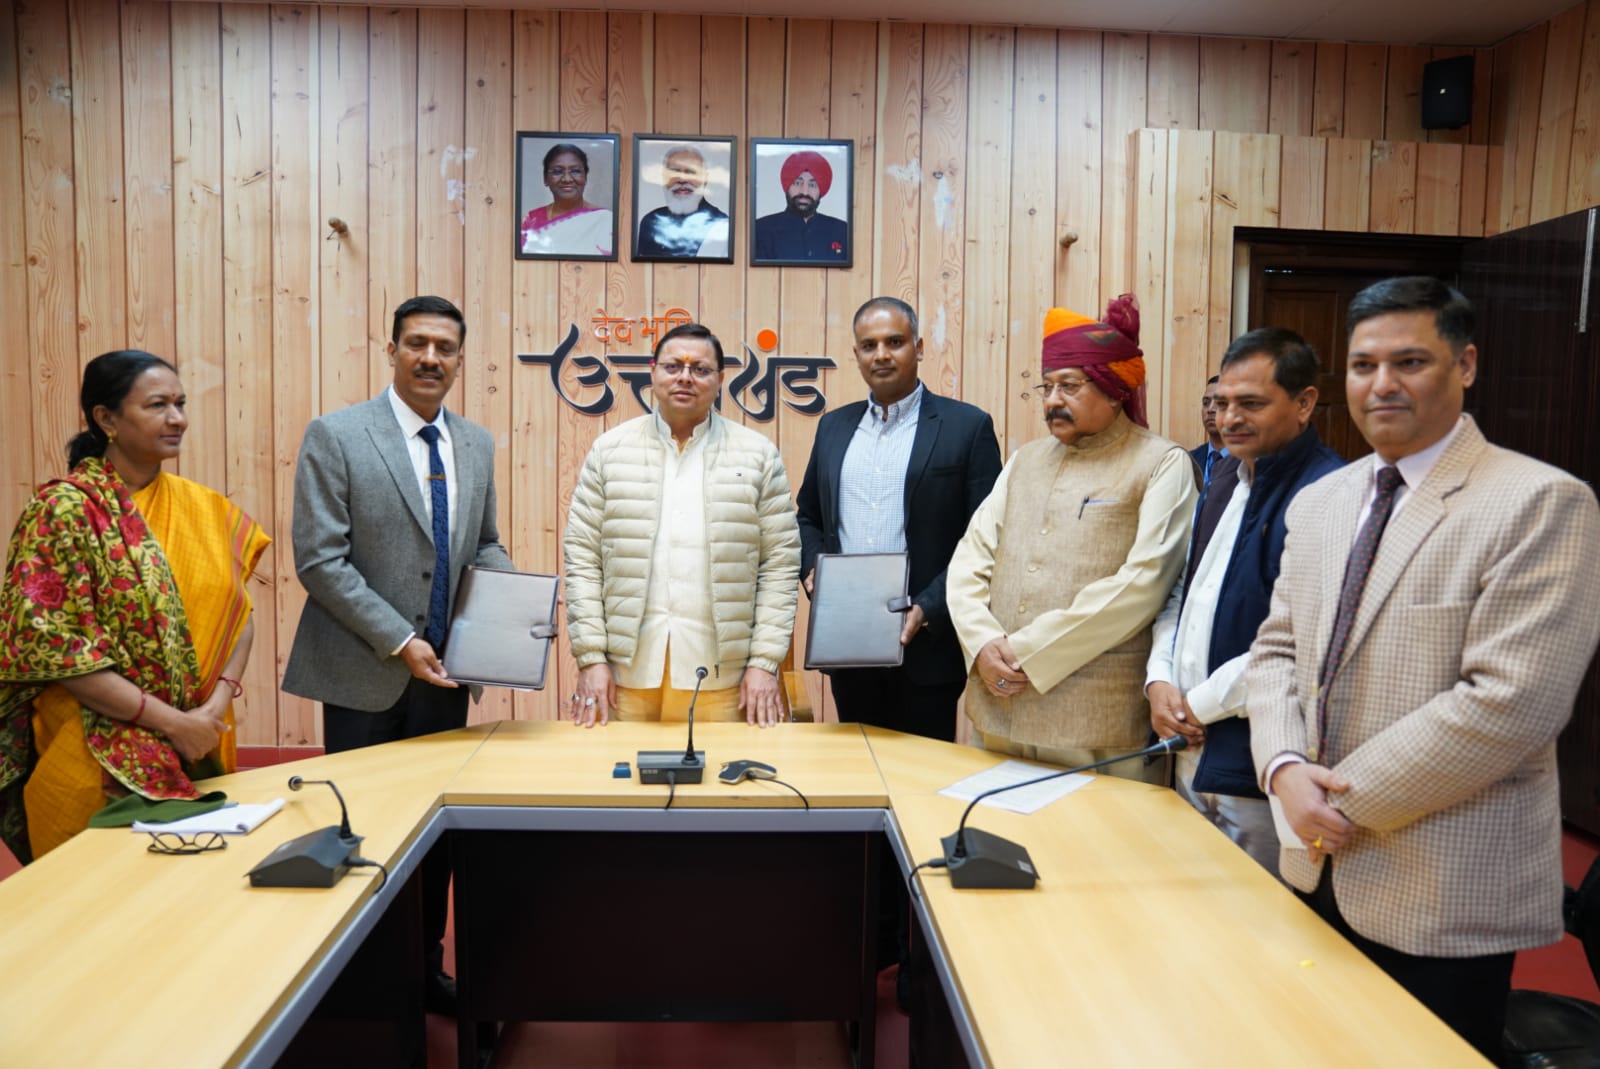 Die Regierung von Uttarakhand unterzeichnet einen Vertrag für ein Seilbahnprojekt zwischen Yankee Chatti und Yamunotri Dham